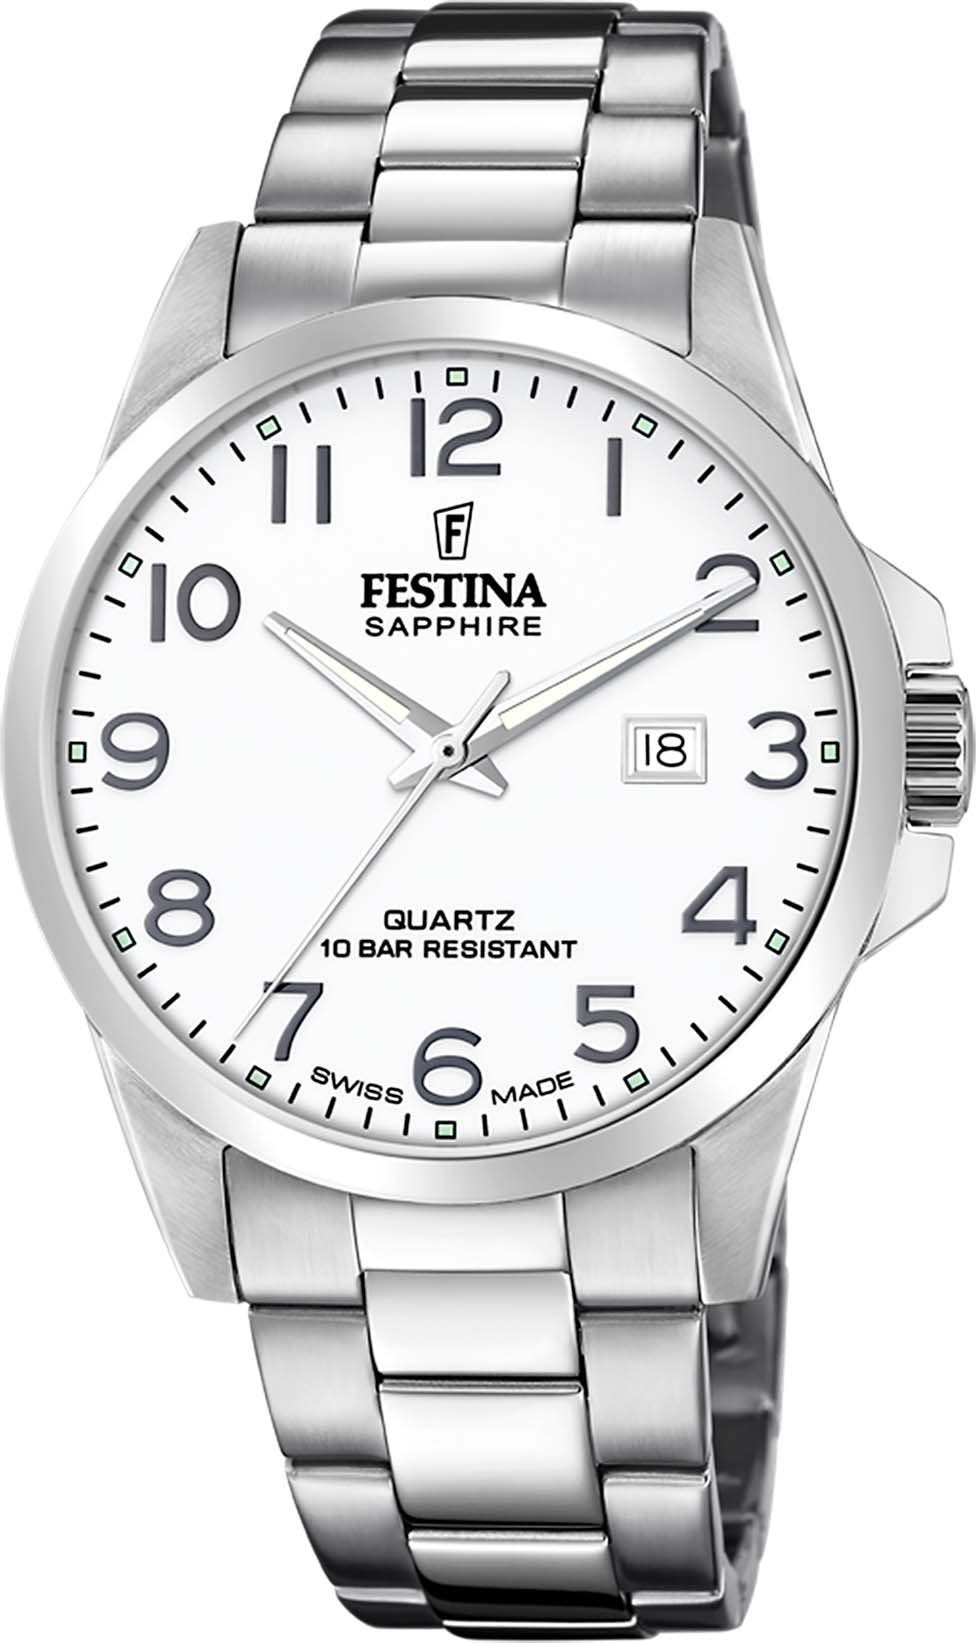 Festina Schweizer Uhr Swiss Made, F20024/1